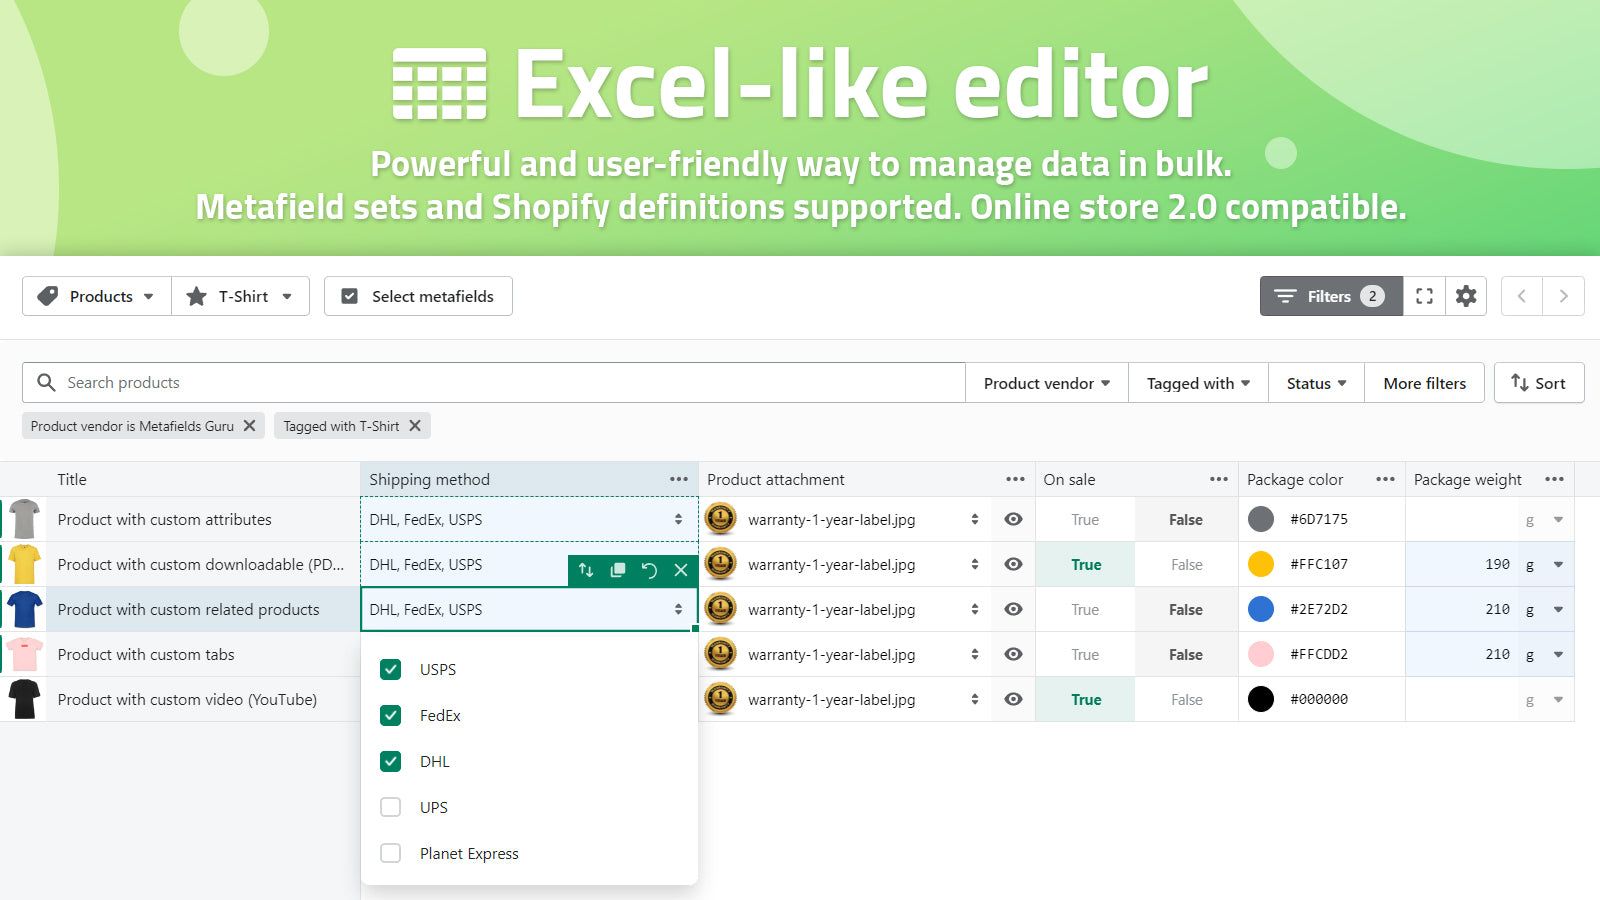 Excel-like editor